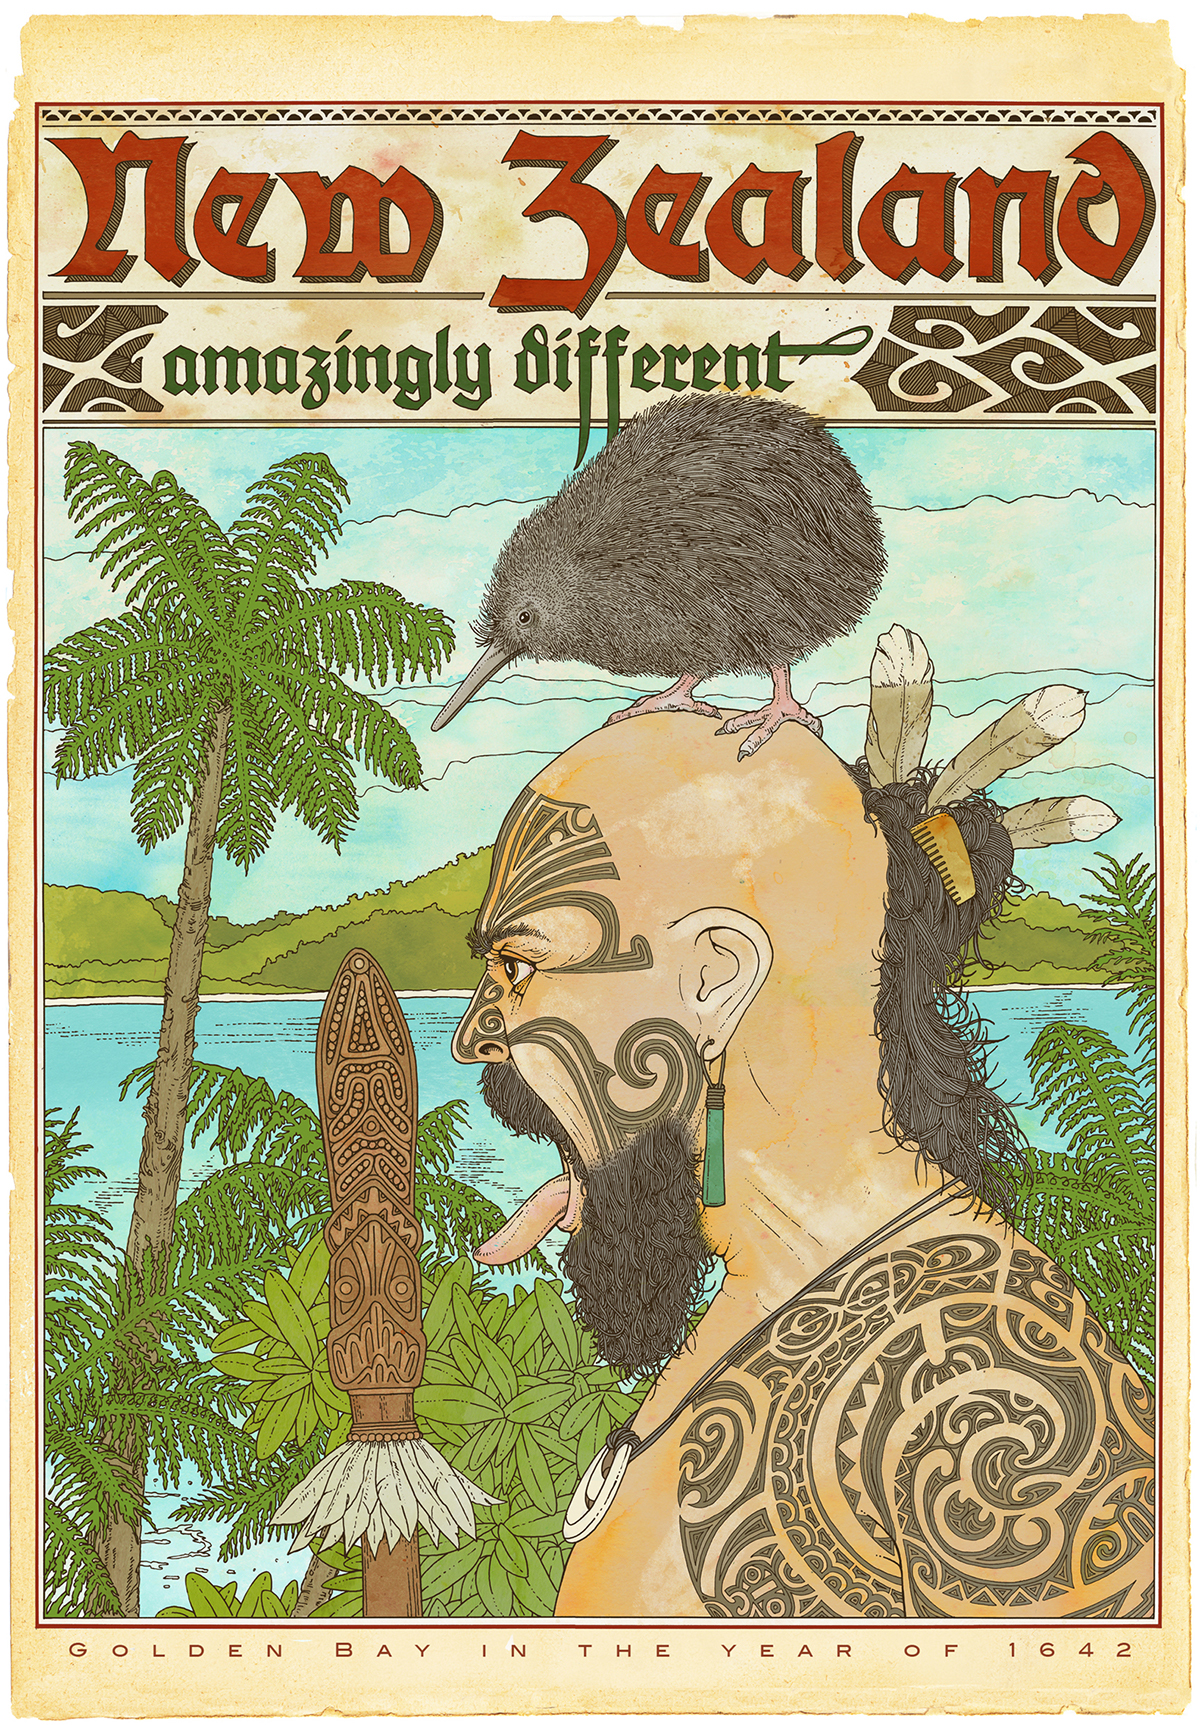 Adobe Portfolio New Zealand maori tatoo tourism kiwi poster